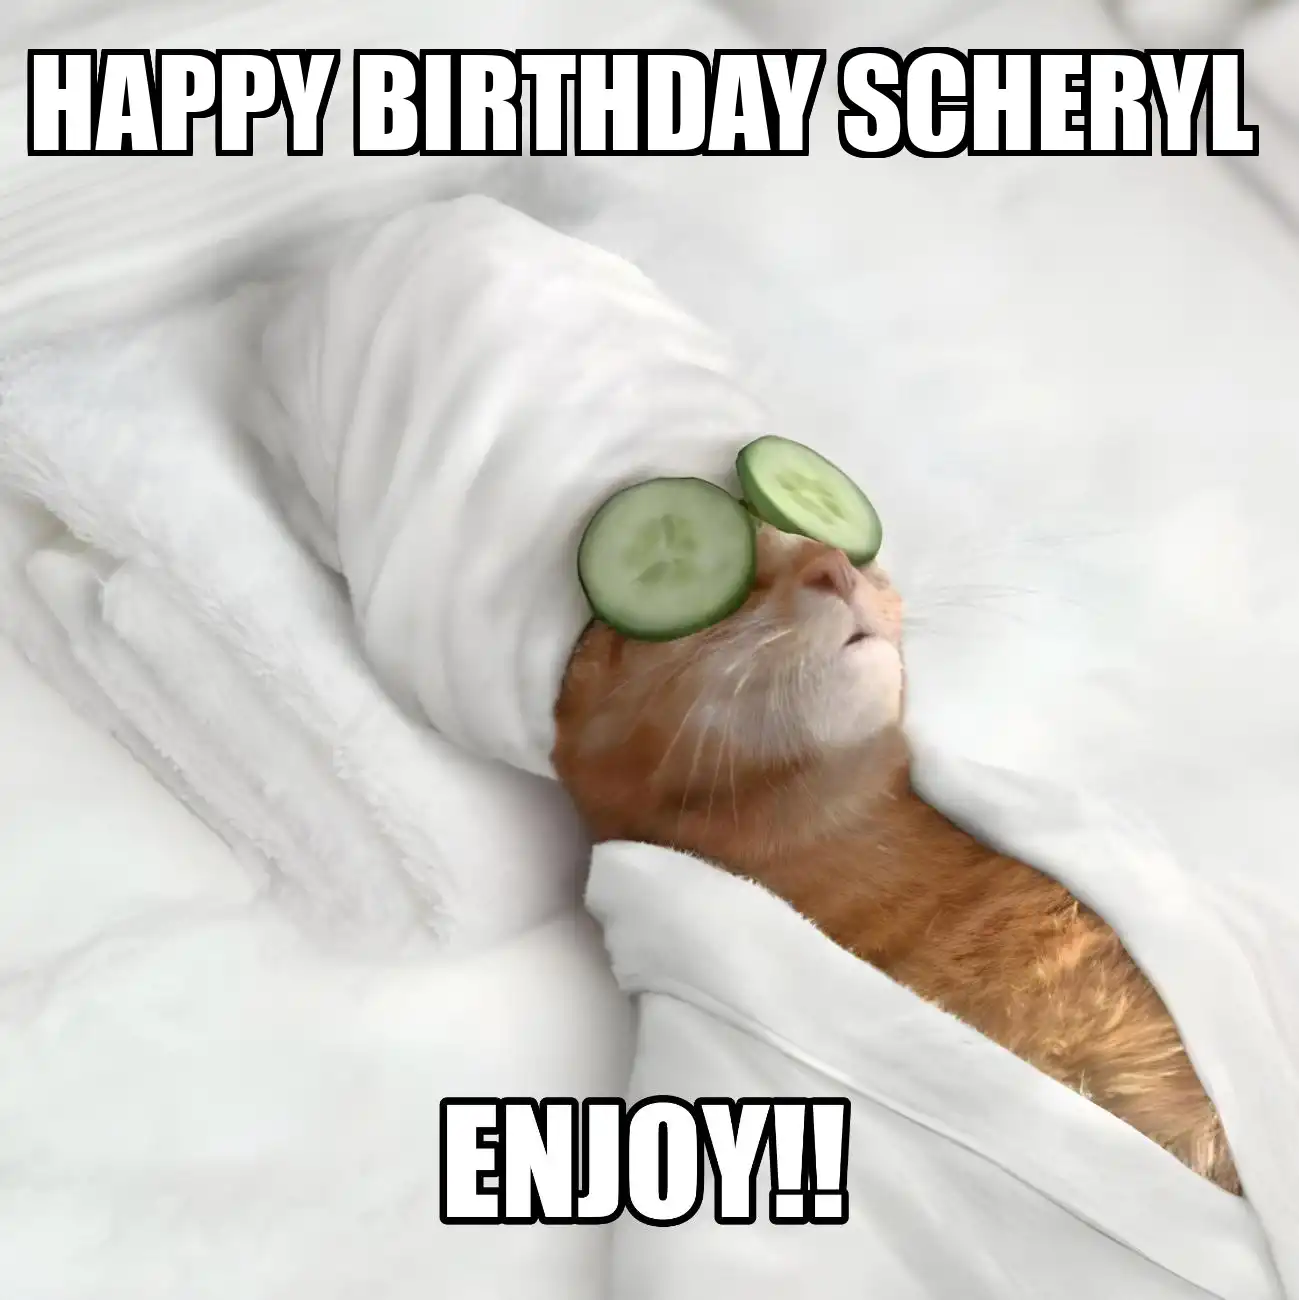 Happy Birthday Scheryl Enjoy Cat Meme